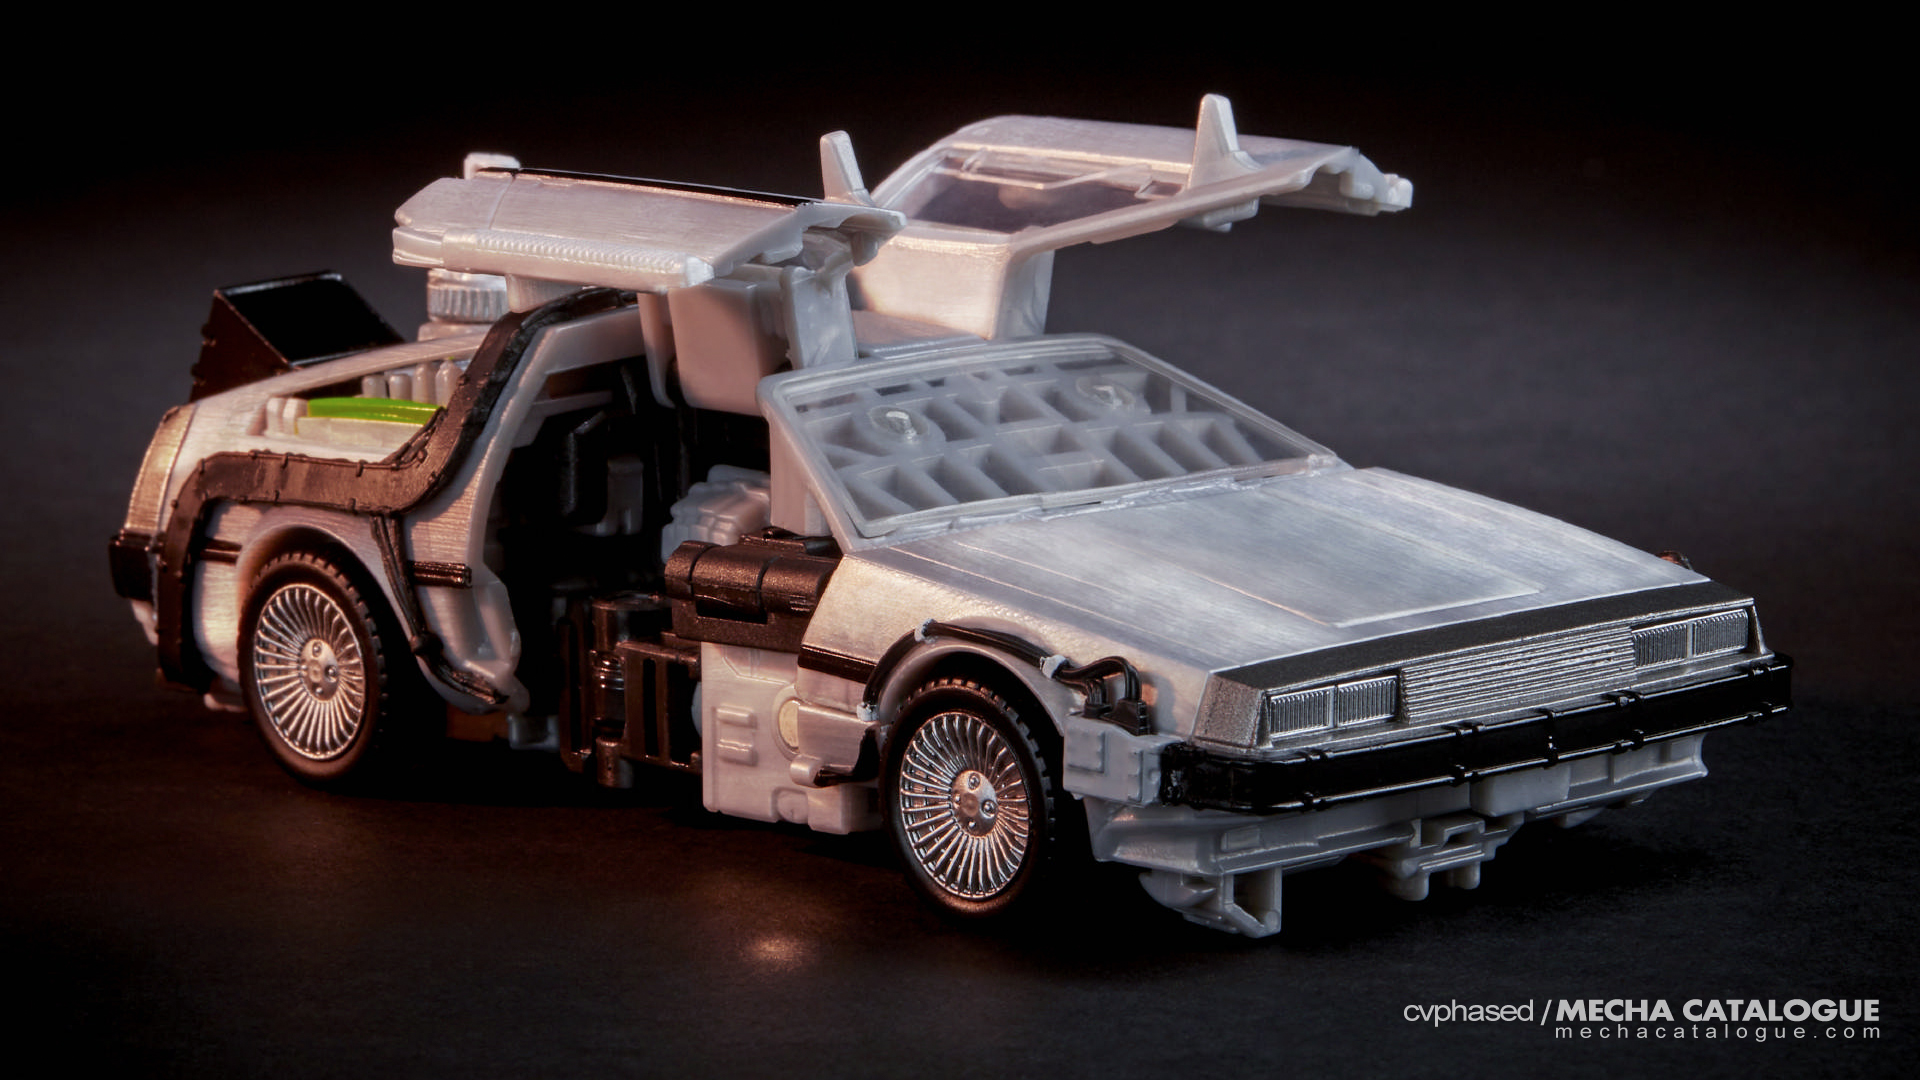 Transformers Collaborative: "Back to the Future" DeLorean / Gigawatt